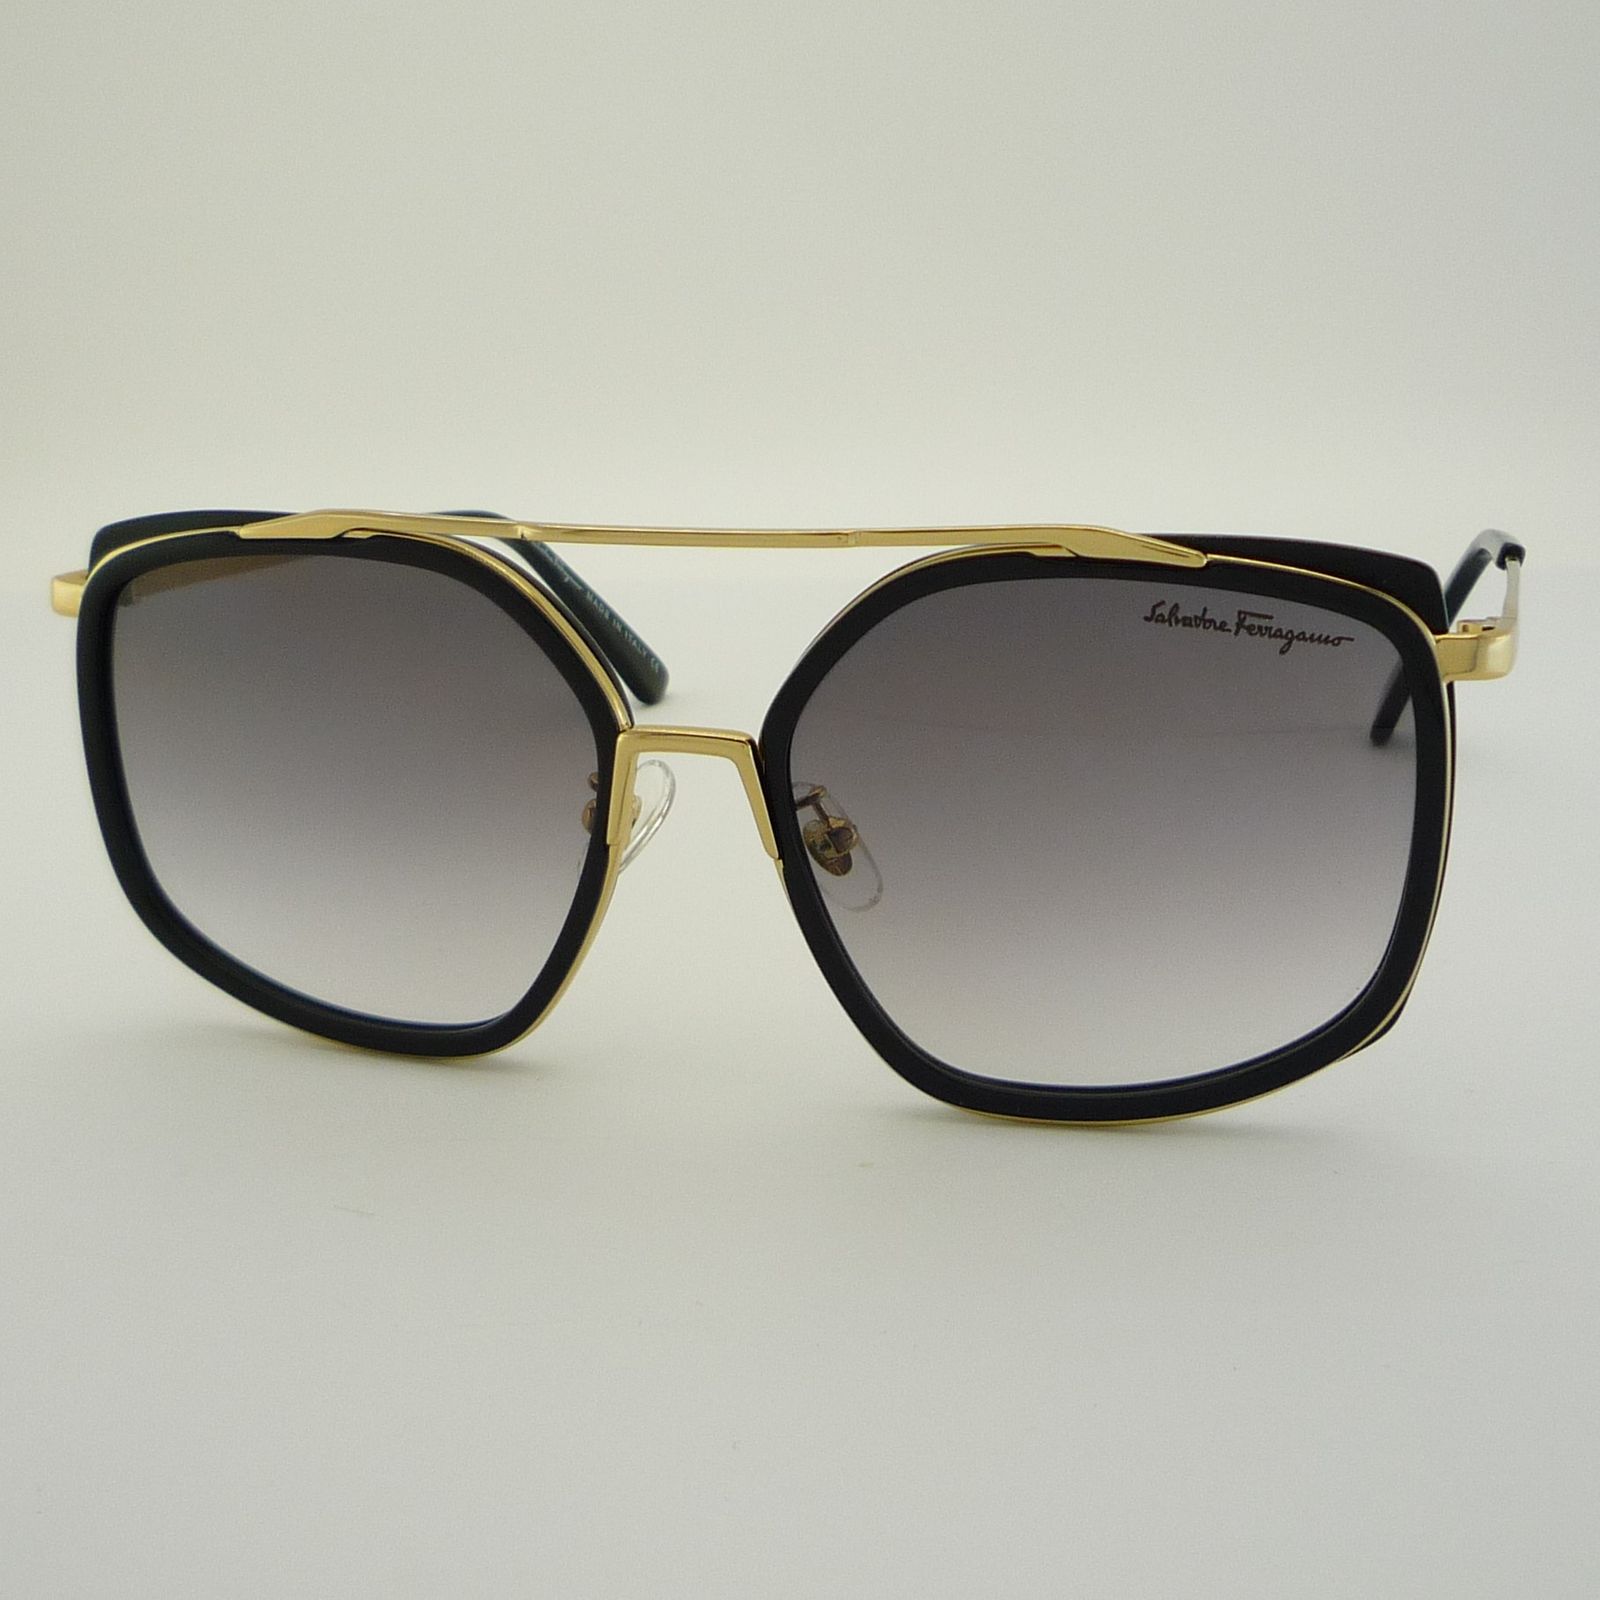 عینک آفتابی سالواتوره فراگامو مدل SF8068-C01 -  - 3